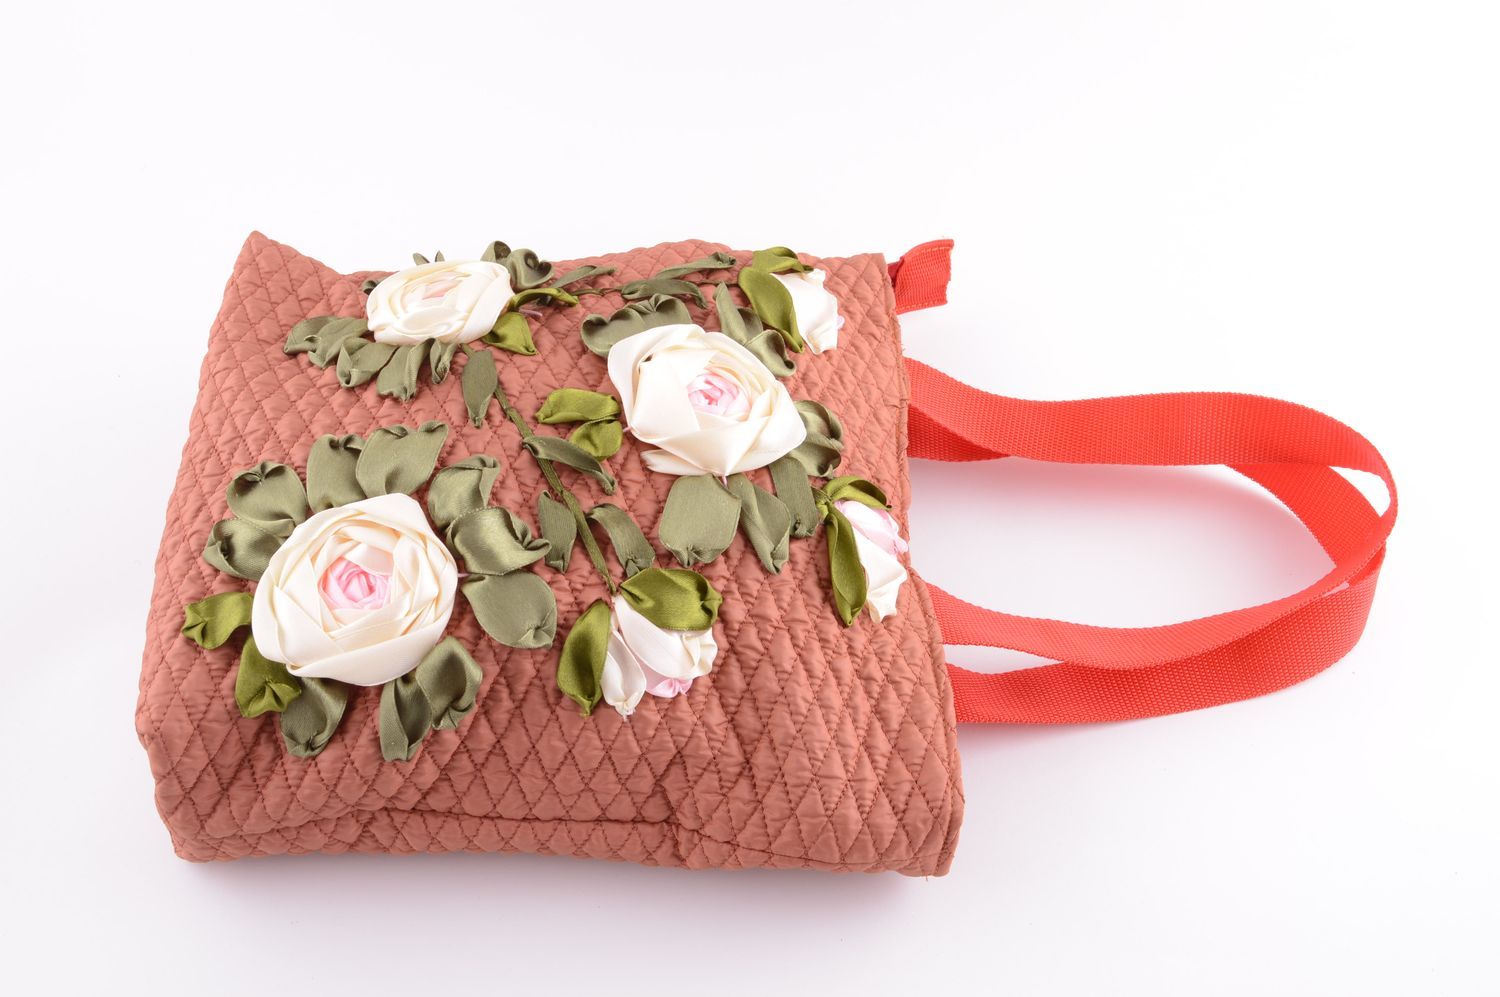 Сумка ручной работы оригинальная сумка на плечо сумка вышитая лентами с розами фото 2